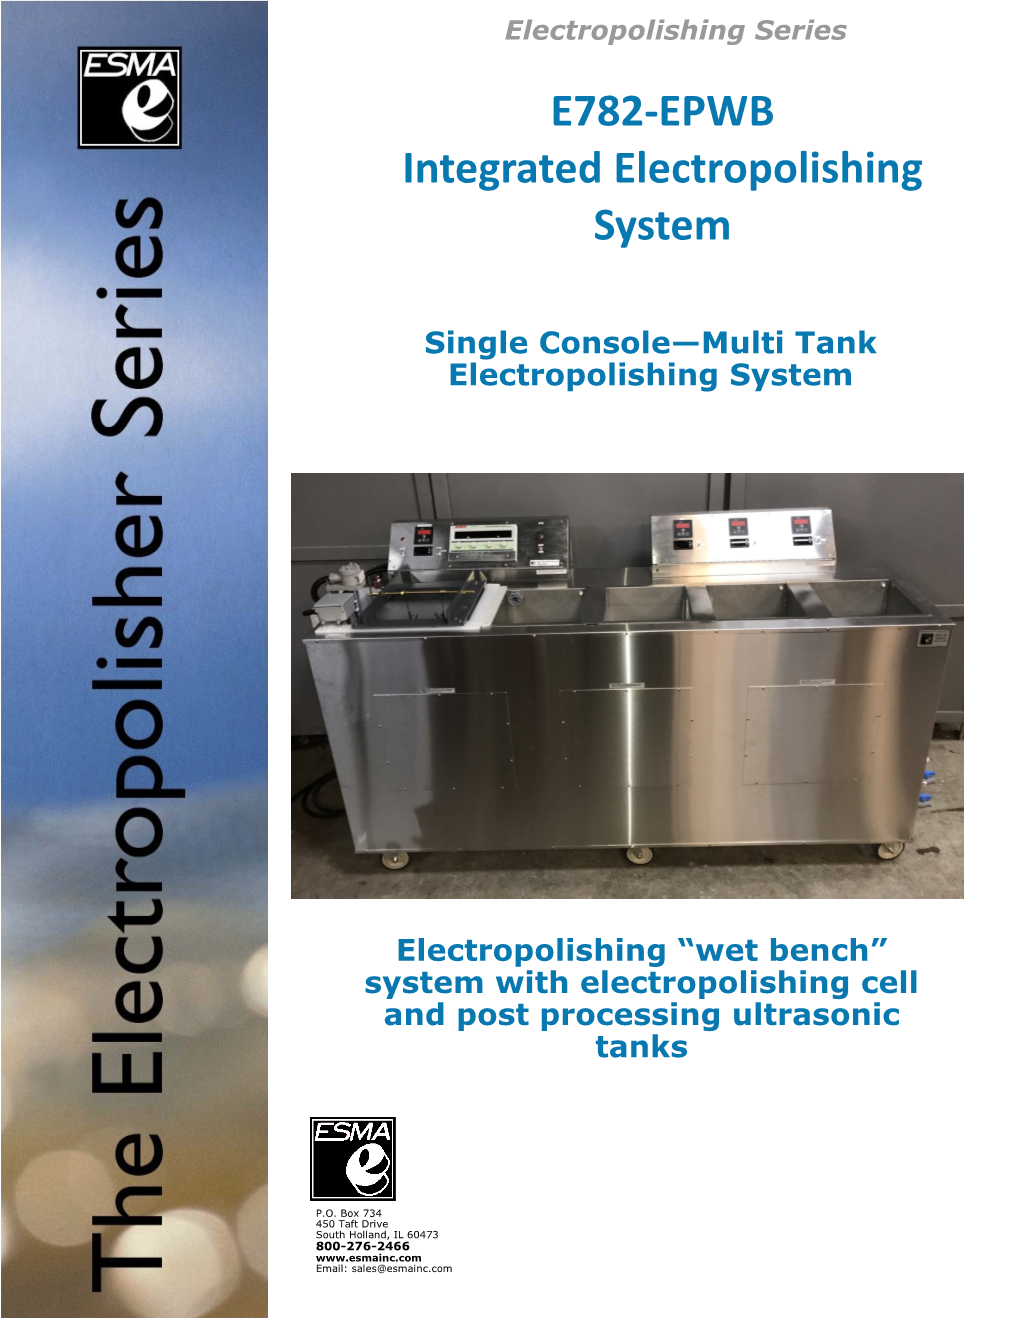 E782-EPWB Integrated Electropolishing System